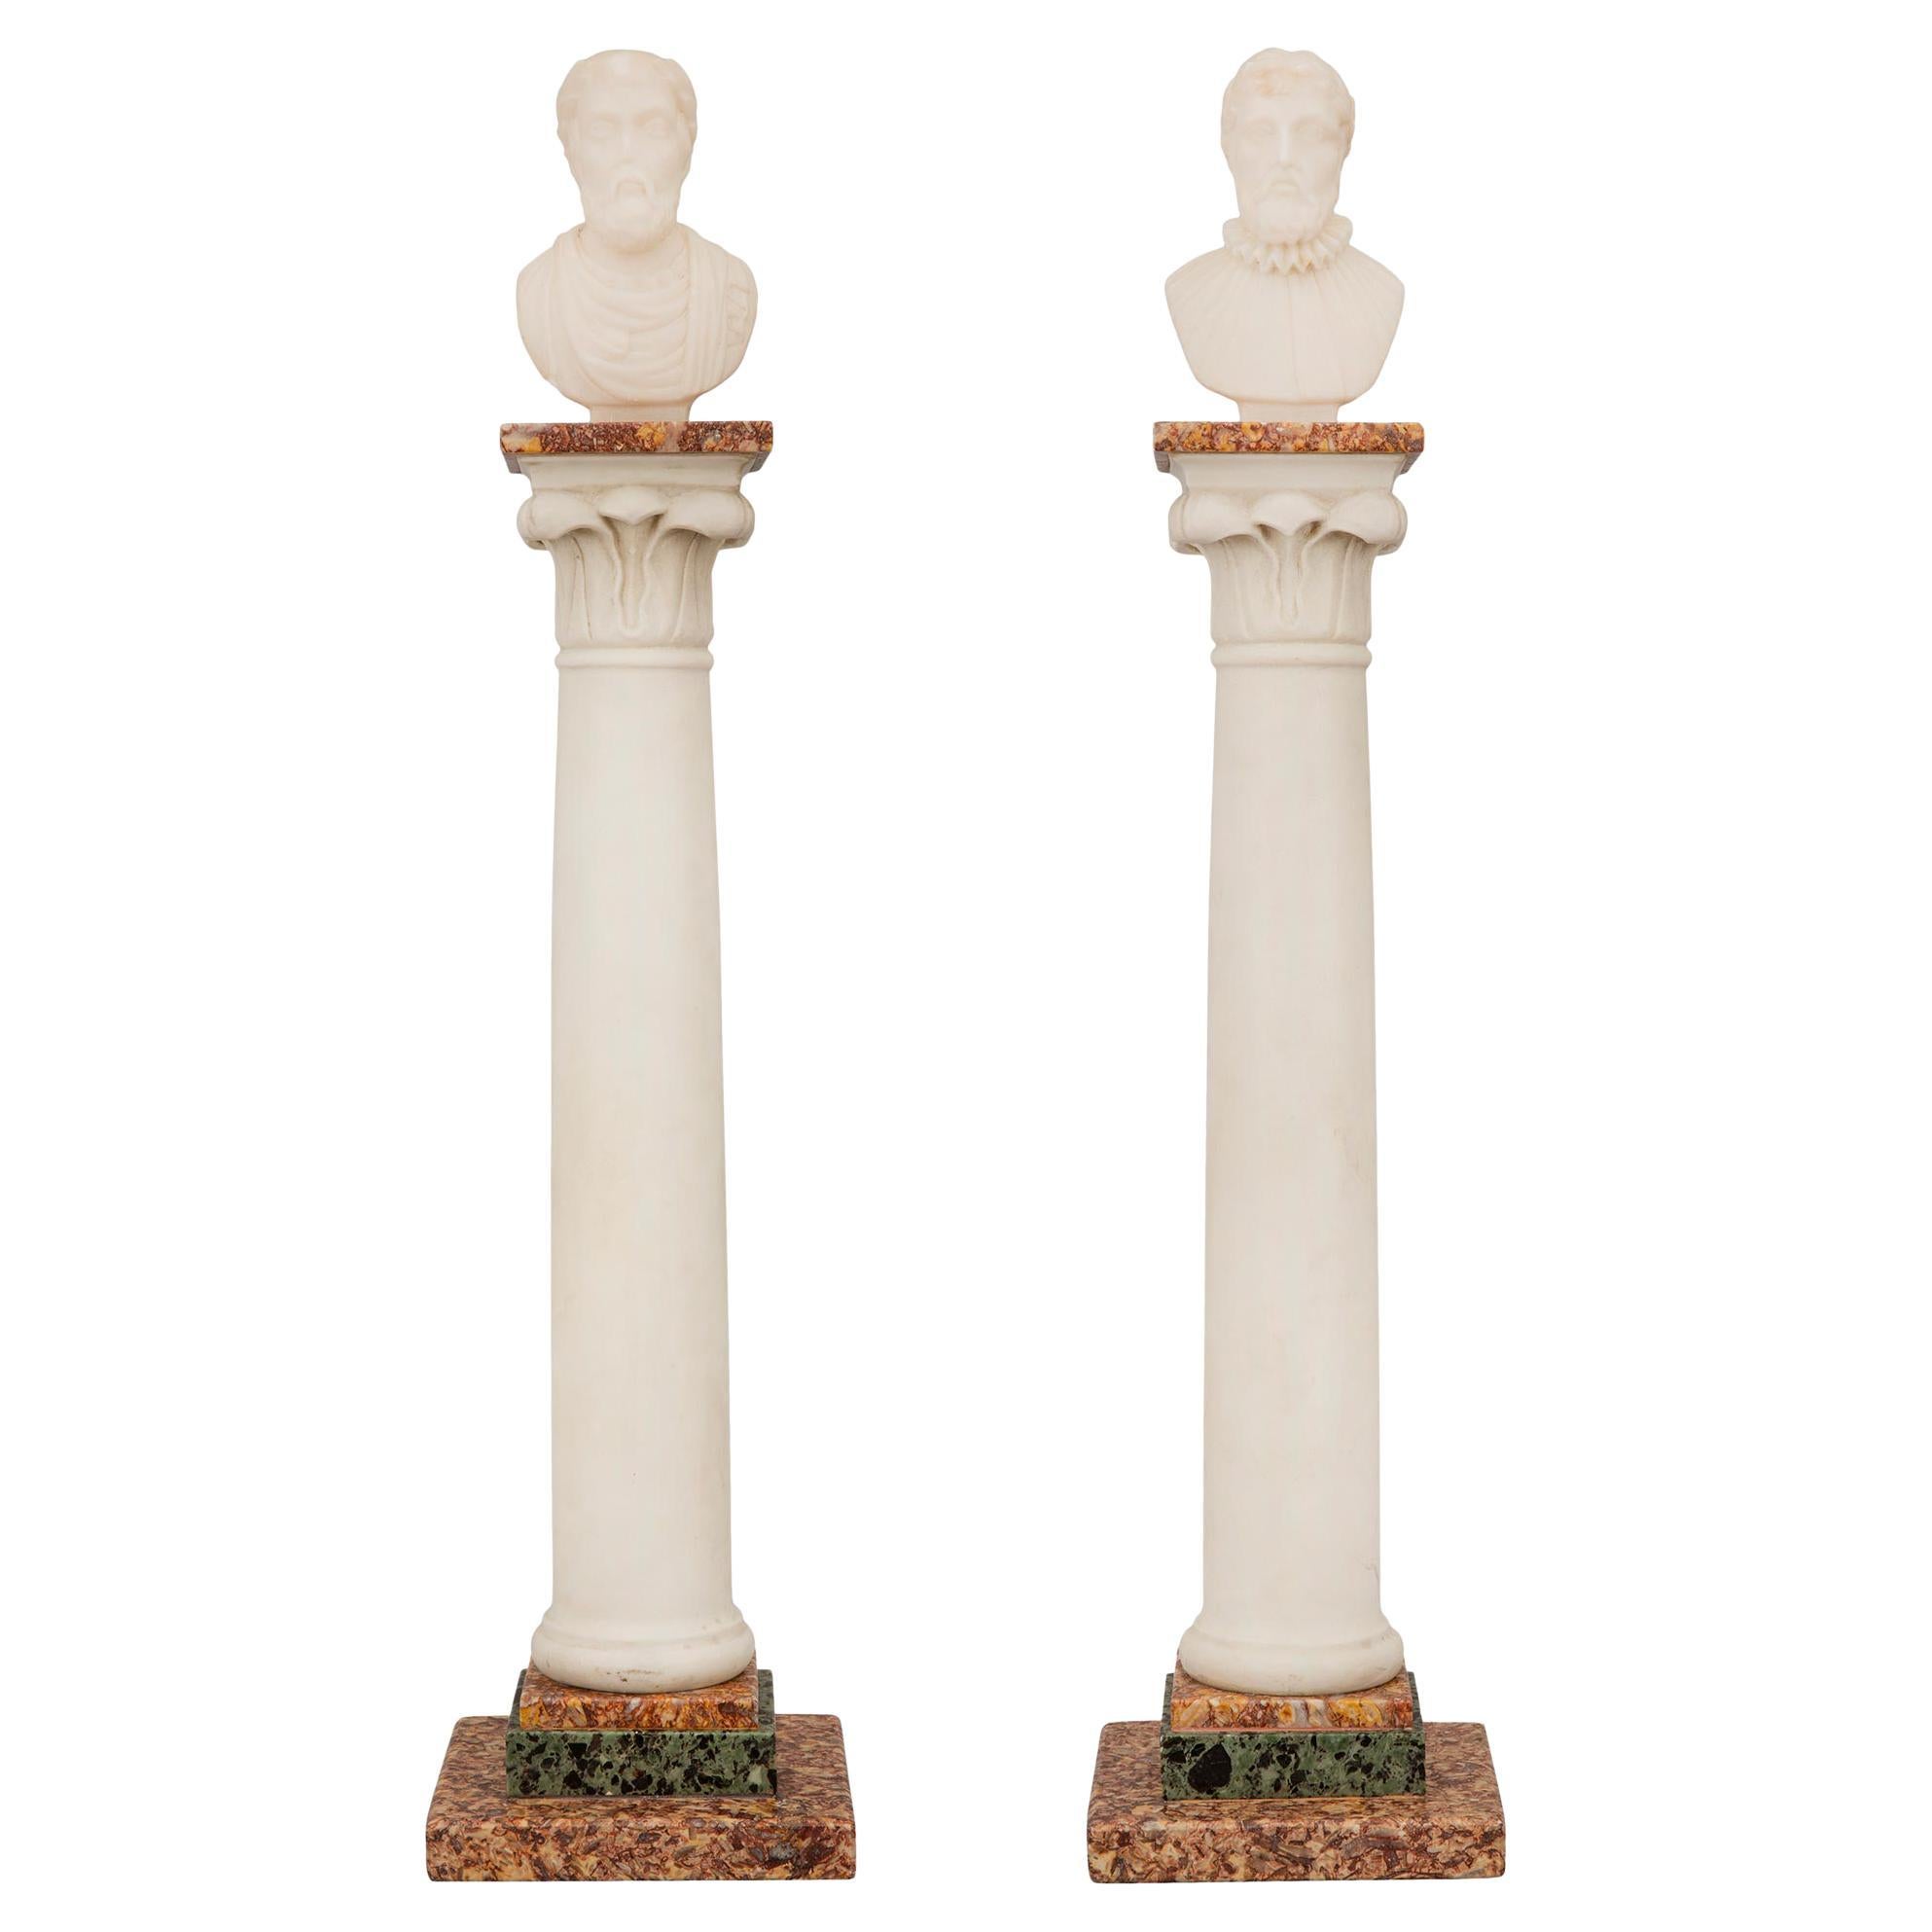 Paire de colonnes en marbre Grand Tour de style néoclassique italien du XIXe siècle